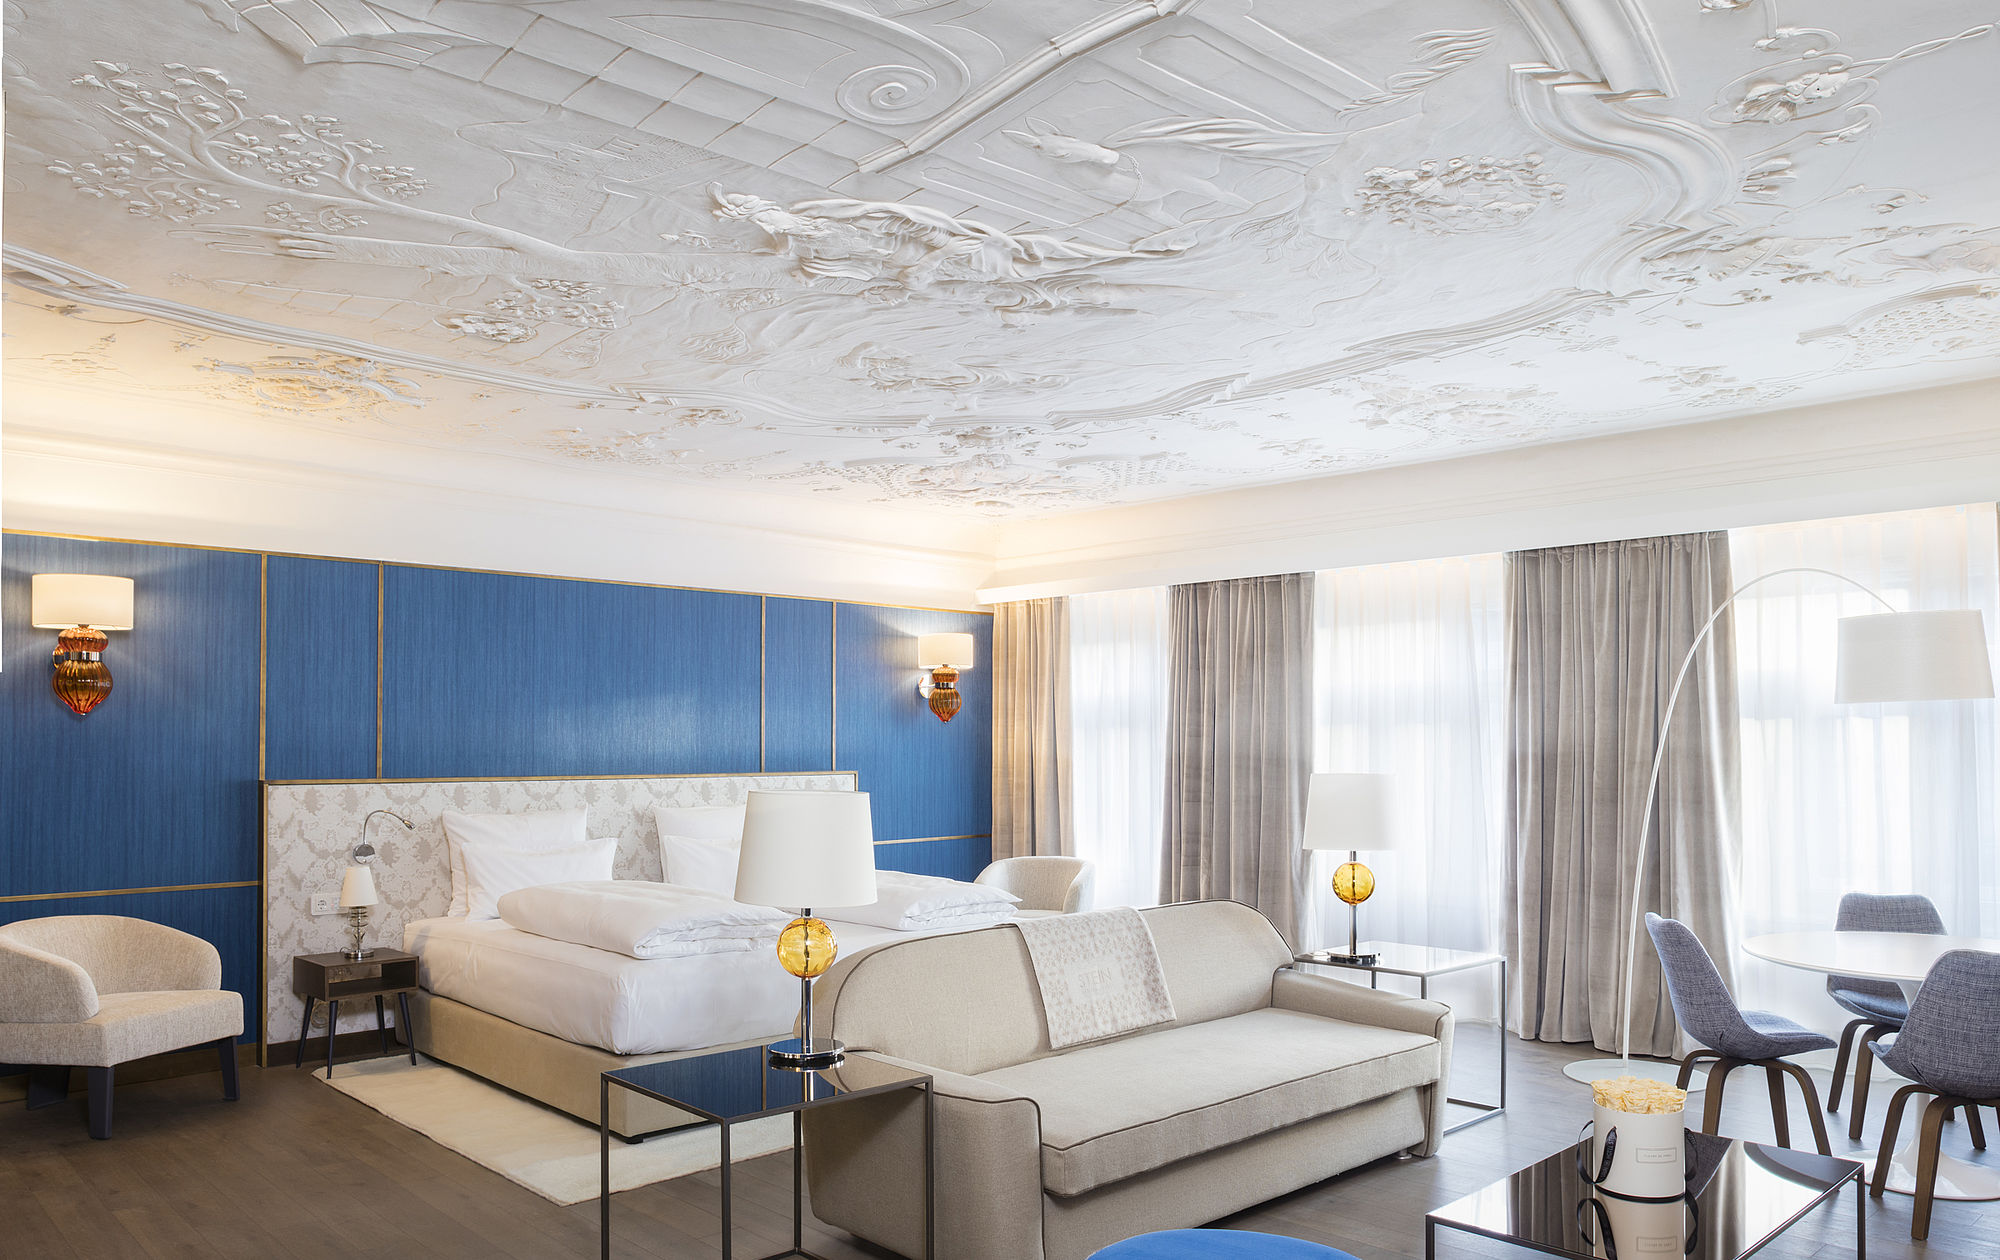 Luxuriös eingerichtete Honeymoon Suite inmitten der Salzburger Altstadt